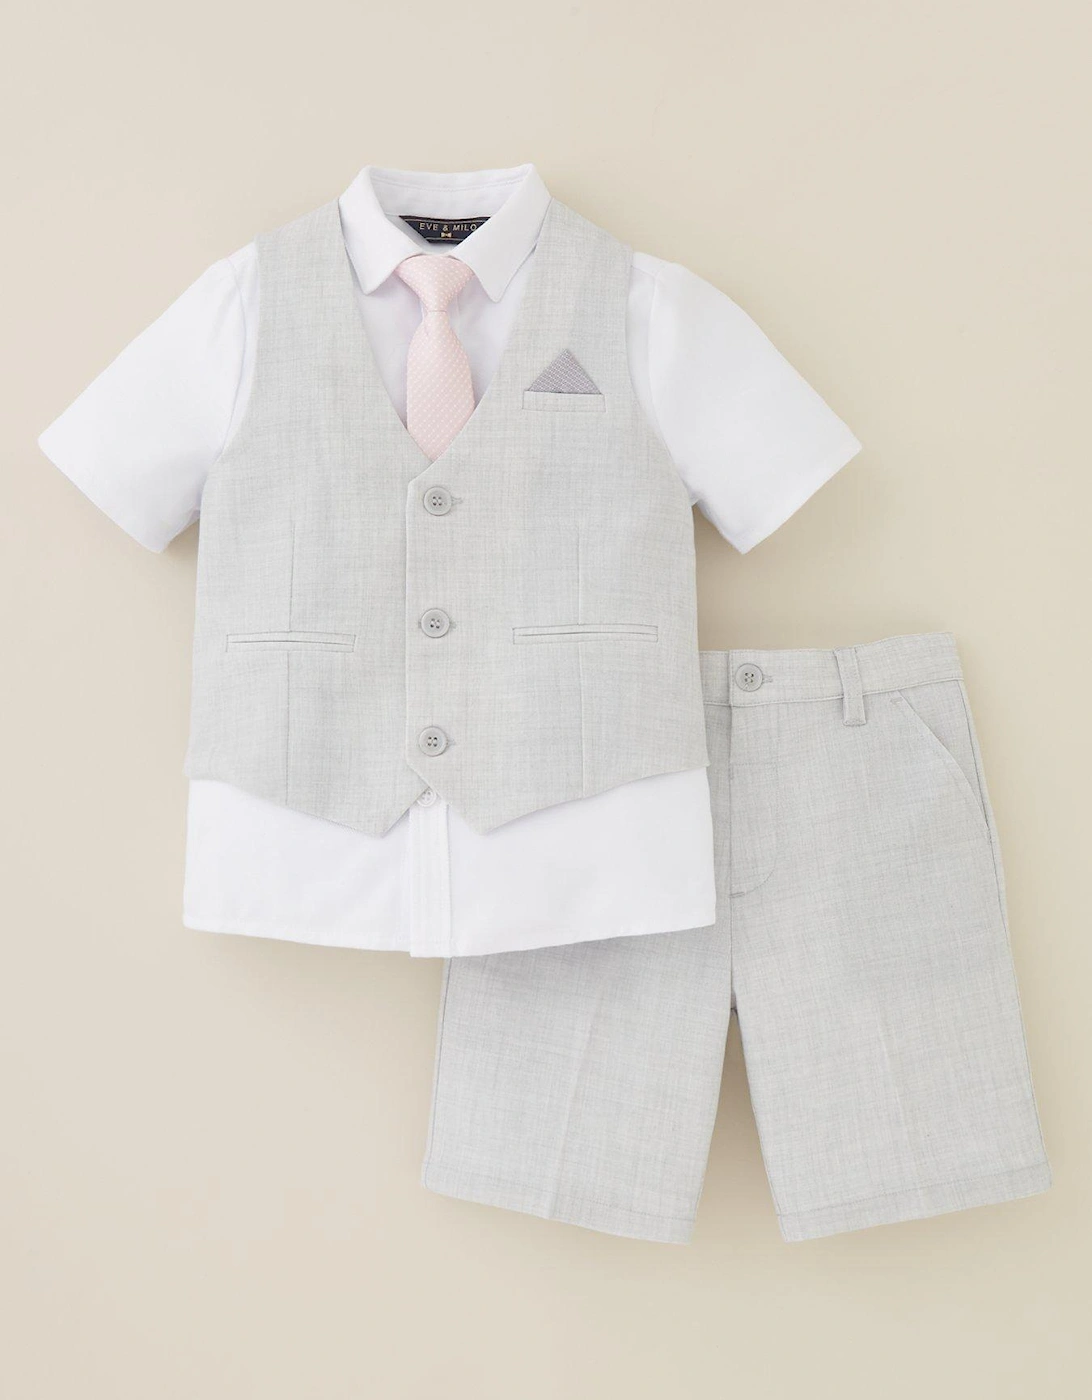 Boys Shorts, Waistcoat, Short Sleeve Shirt and Tie Set - Grey, 3 of 2